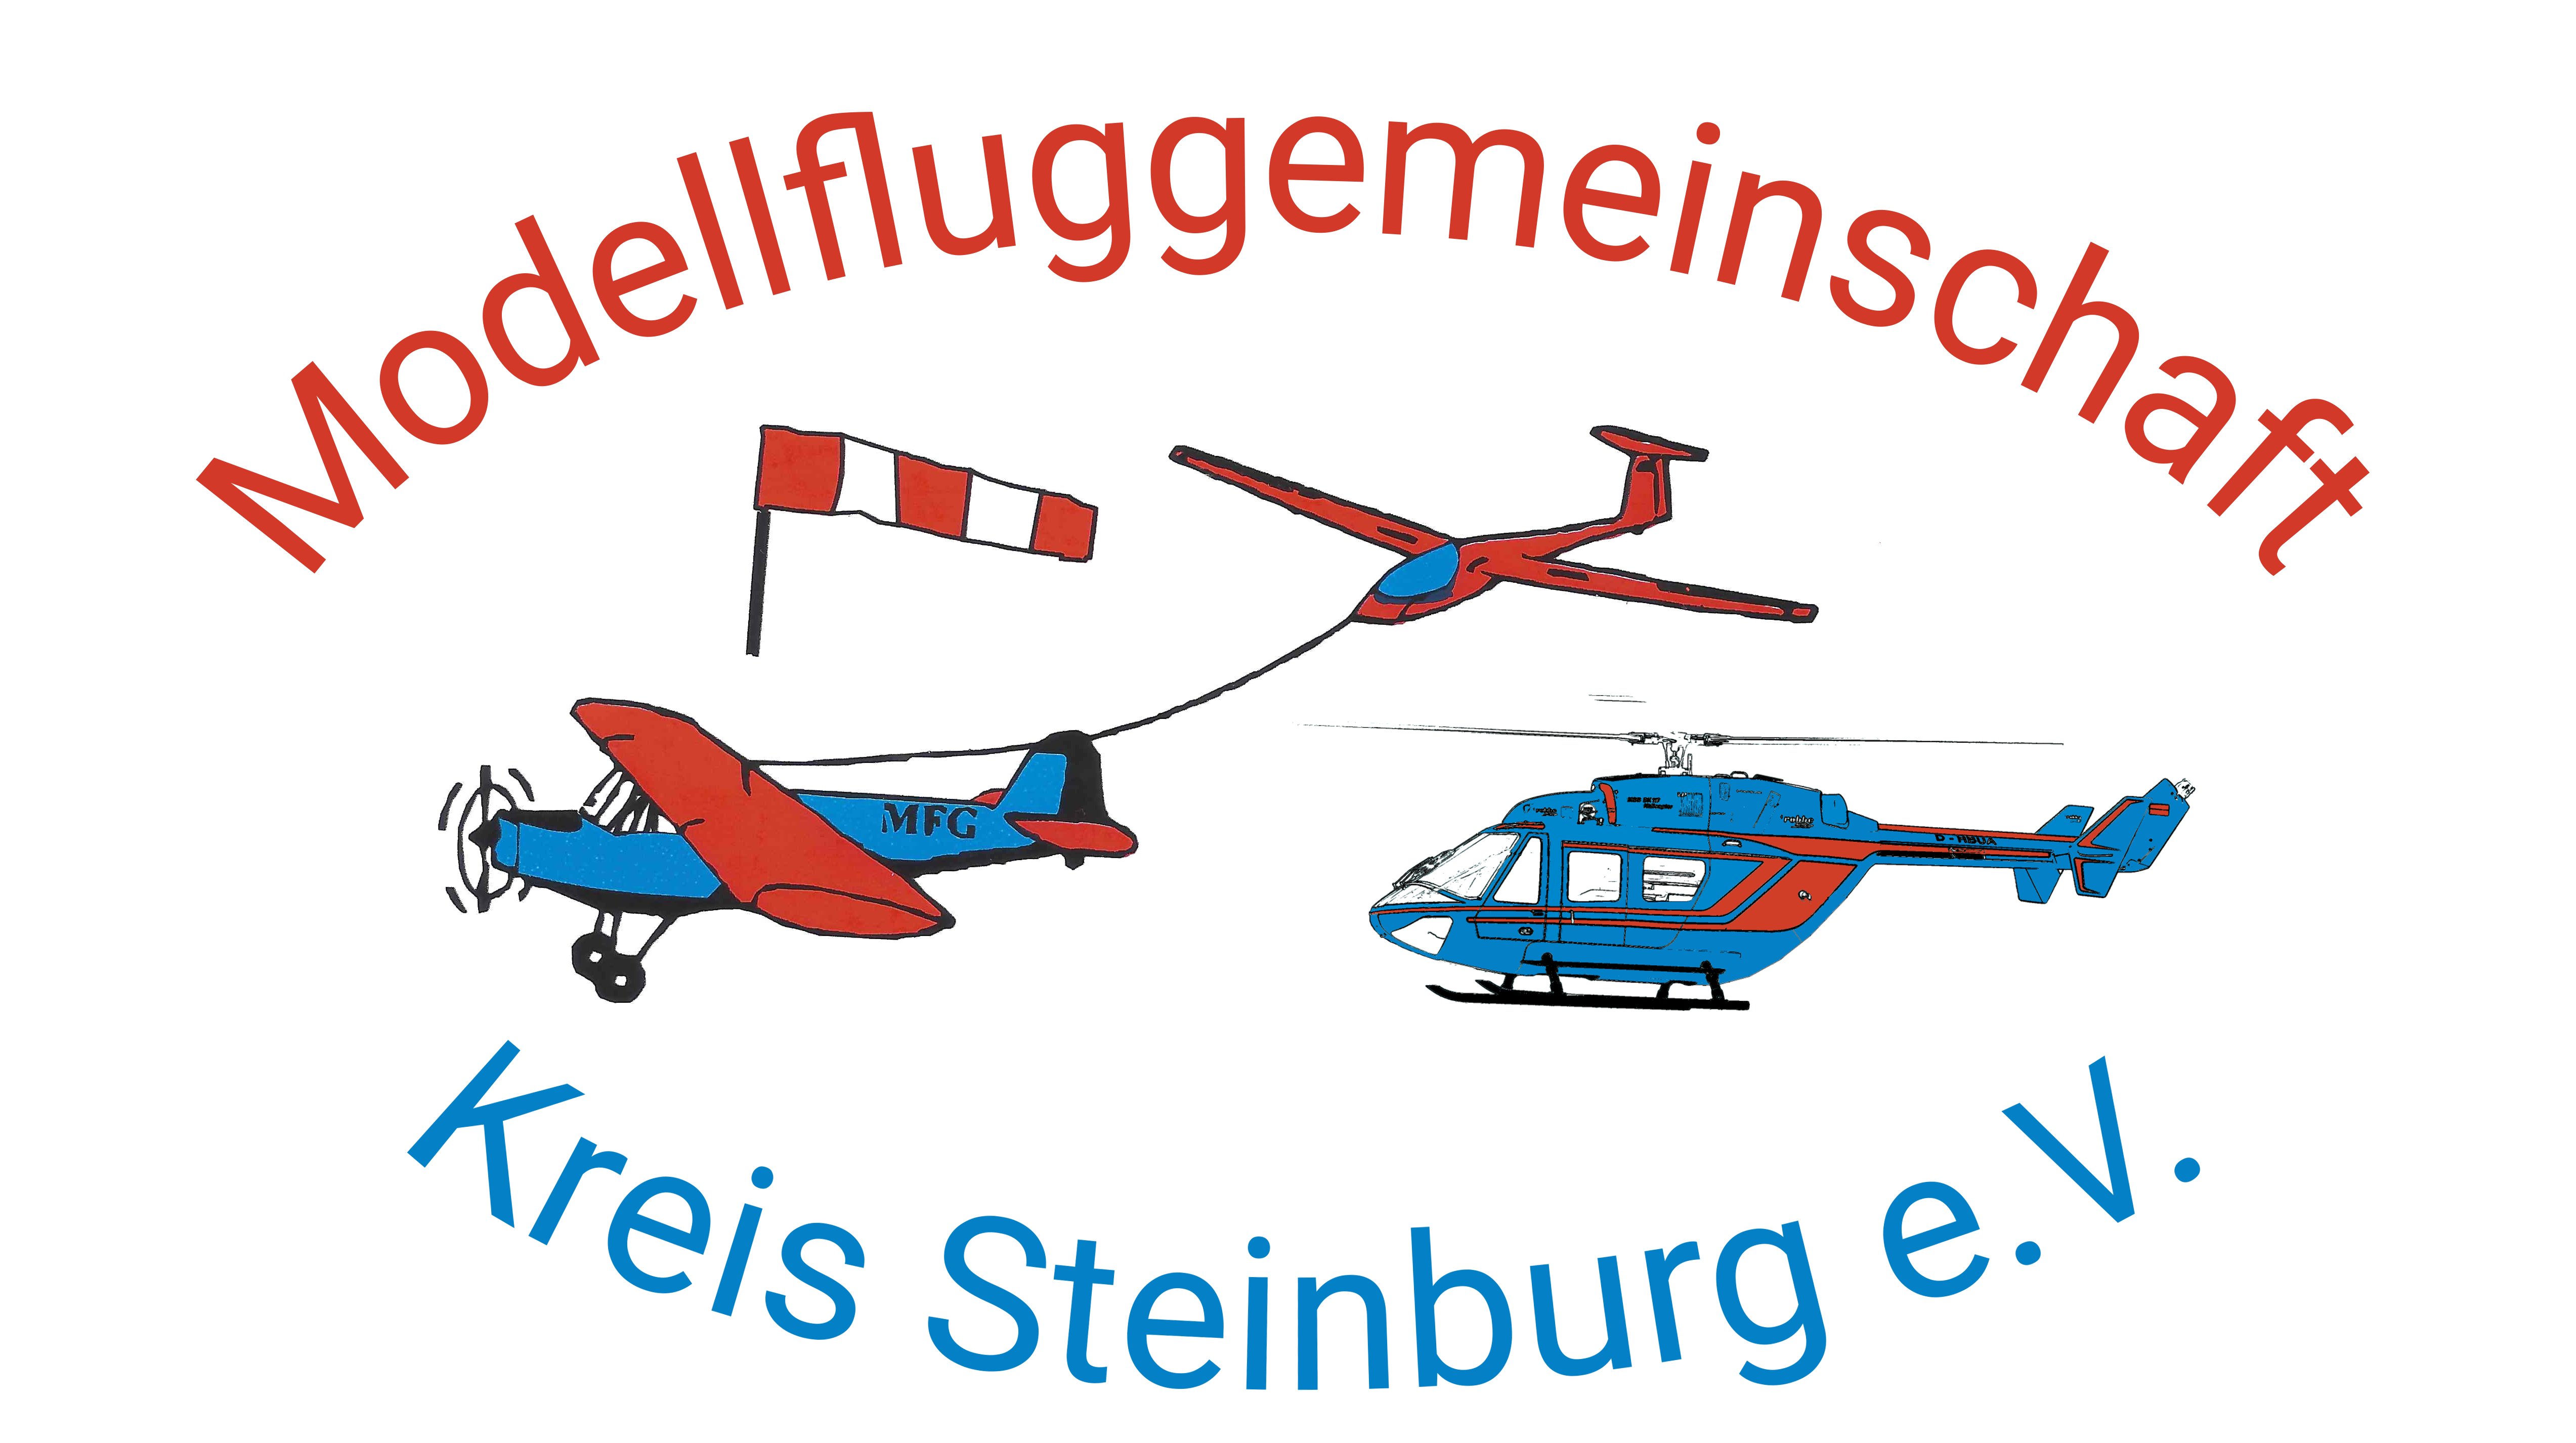 Modellflug Gemeinschaft  Kreis Steinburg e.V. 